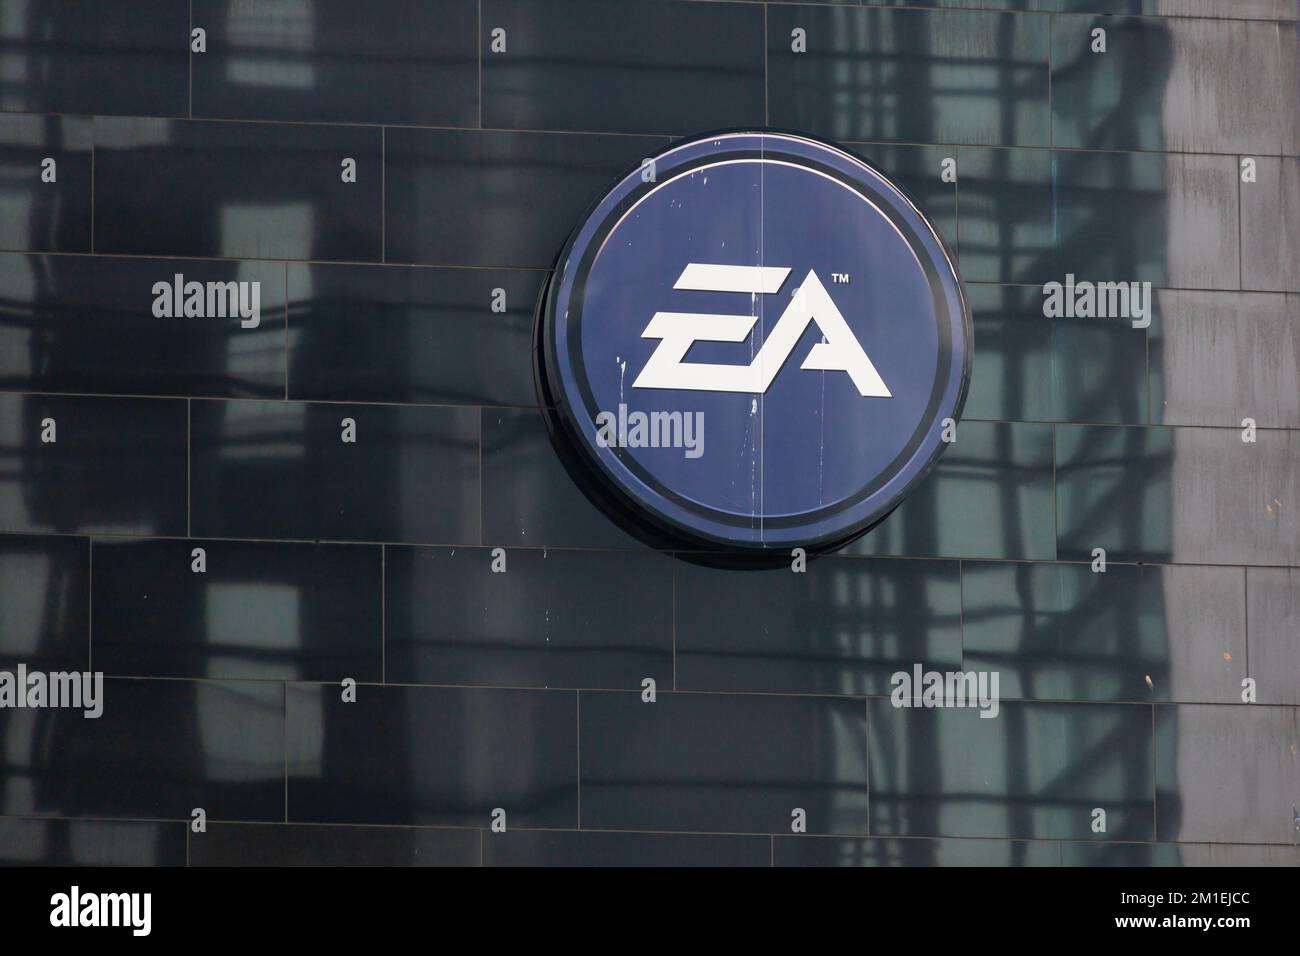 Electronic Arts EA logo, Kranhaus Sud, l'un des trois immeubles de bureaux Kranhauser dans le quartier rheinauhafen de Cologne, Allemagne. Banque D'Images